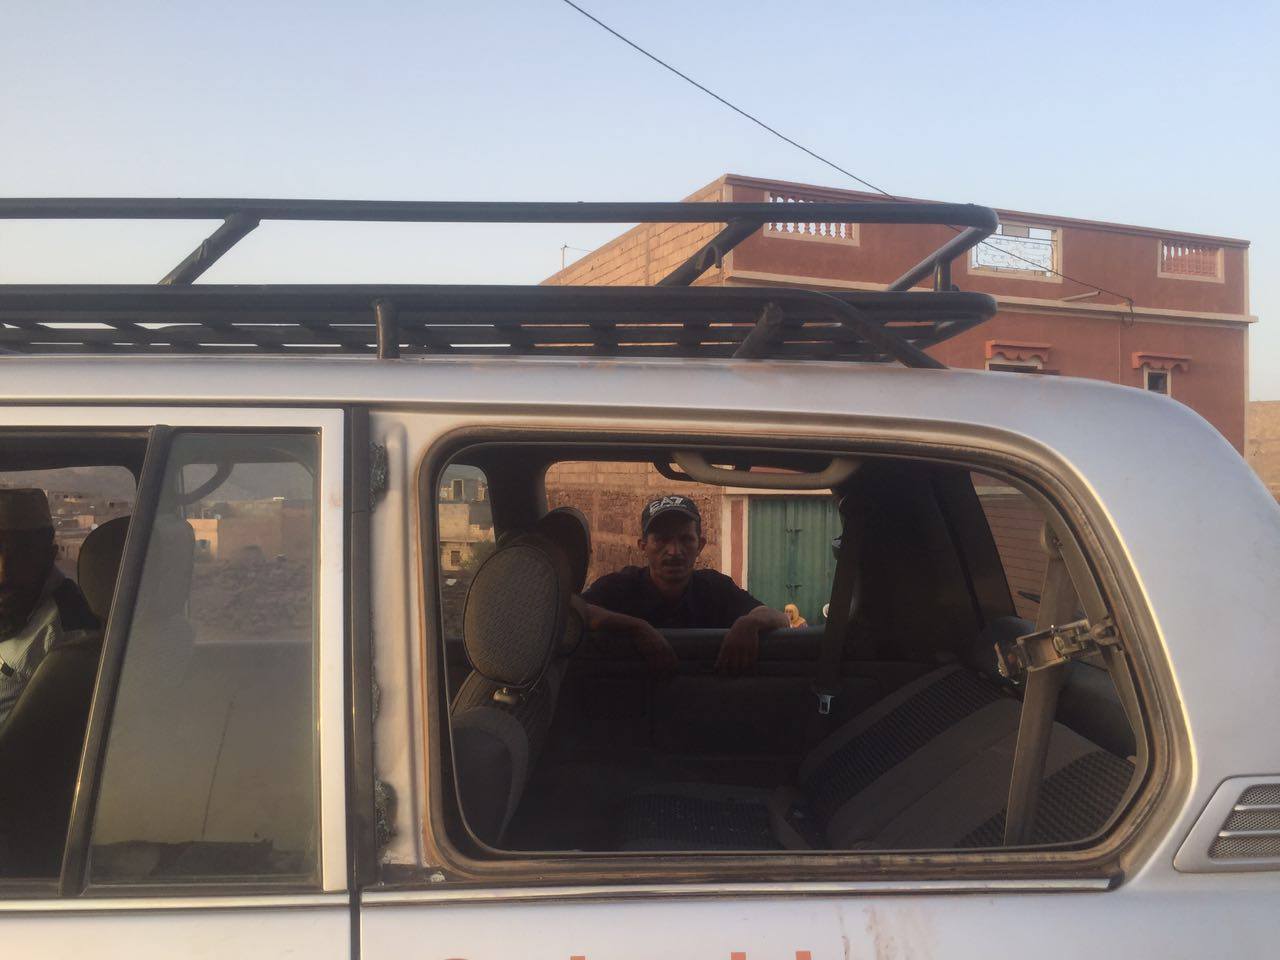 انتخابات اخر زمن …نبيل بن عبد الله يلتجأ للقضاء بعد موقعة “أزيلال” بين الكتاب والتراكتور